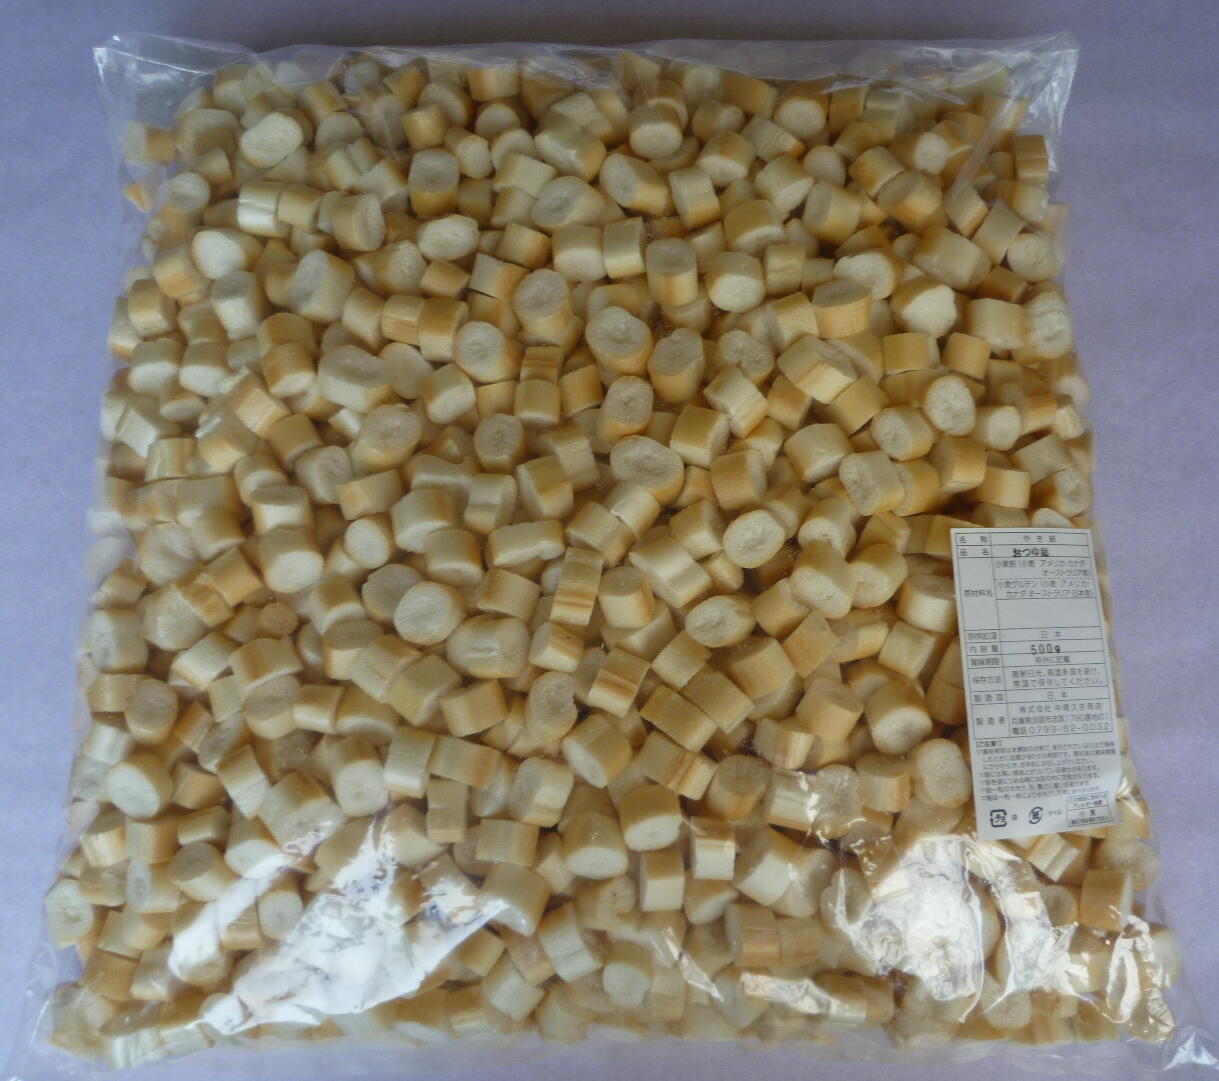 原材料は、輸入小麦を日本で製粉した小麦粉と、日本で製造した小麦グルテンです。 品質管理のもと小麦粉と小麦グルテンとを練り合わせ高温で焼麸を製造、おいしさと安全を追求し焼き上げた植物性蛋白質を多く含んだ自然食品です。 小麦粉の配合を多くして焼き上げているので、1粒の重さは重くなっています。 用途：みそ汁・お吸い物・酢の物・すきやき・煮物・鍋物・うどん・ソーメン・たまご丼等※※商品画像はイメージです。 メーカー都合等により、予告なくパッケージ、仕様（原材料、生産国、色、形状、サイズ等）の変更がある場合がございます。 あらかじめご了承ください。